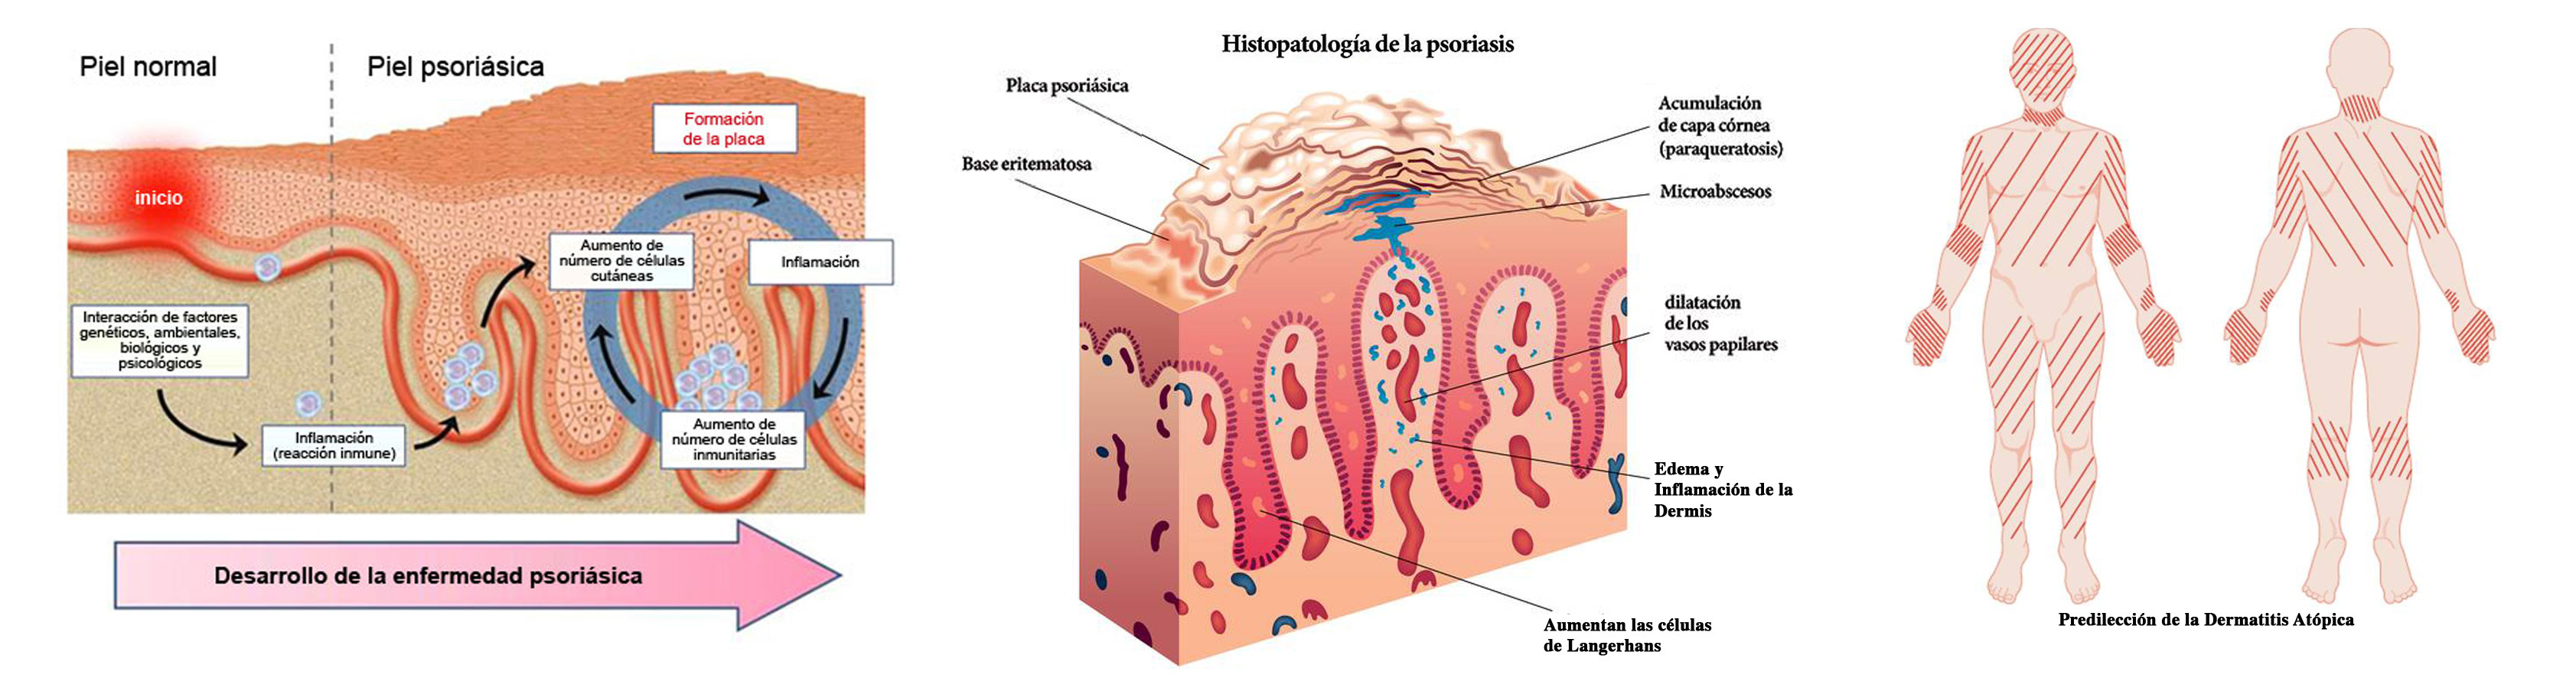 Psoriasis_y_dermatitis_atopica